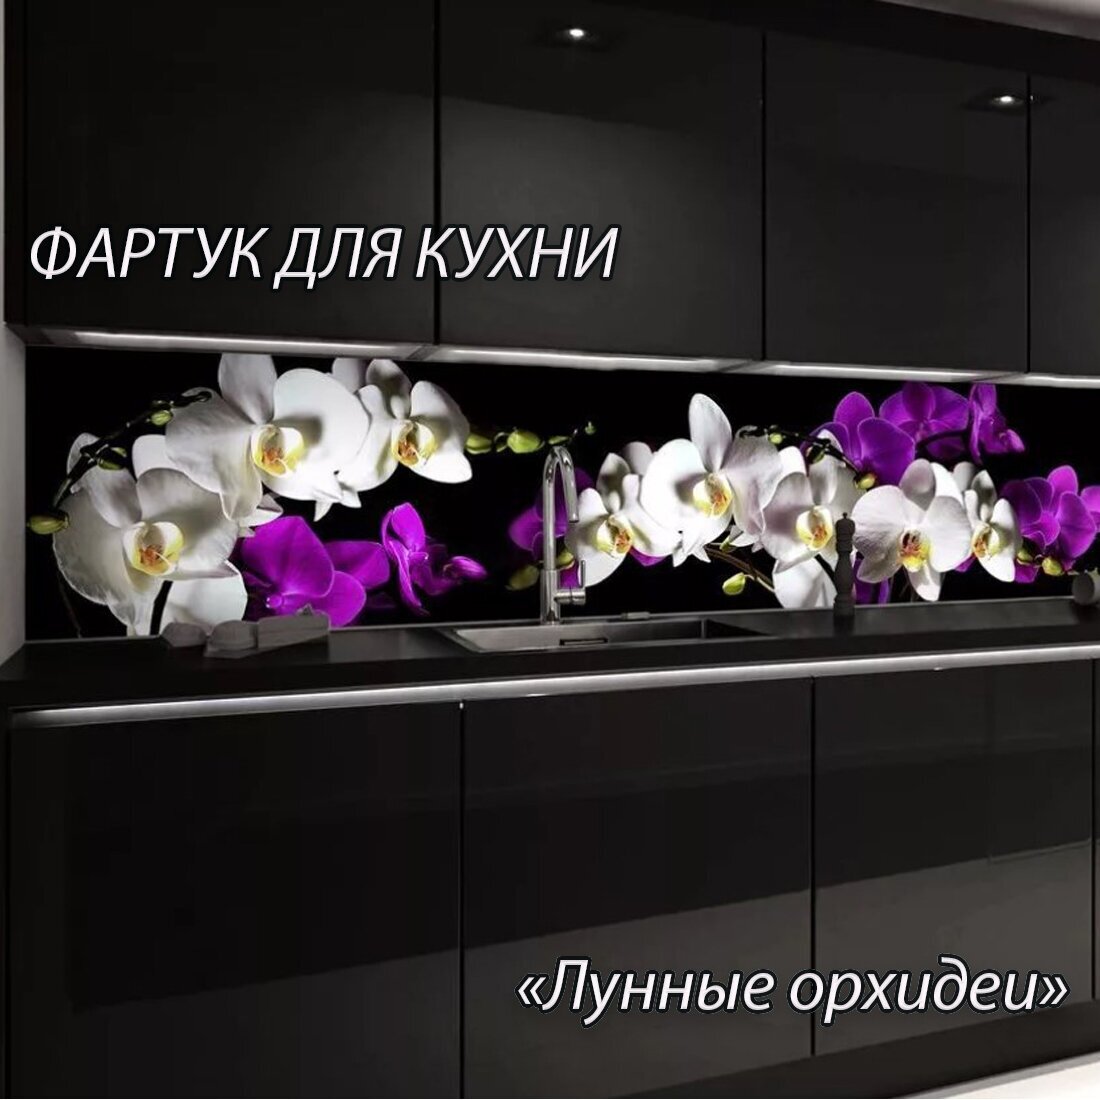 Фартук для кухни из АБС пластика "Лунные орхидеи" 3000*600*1,5мм. Кухонный фартук ABS с фотопечатью.